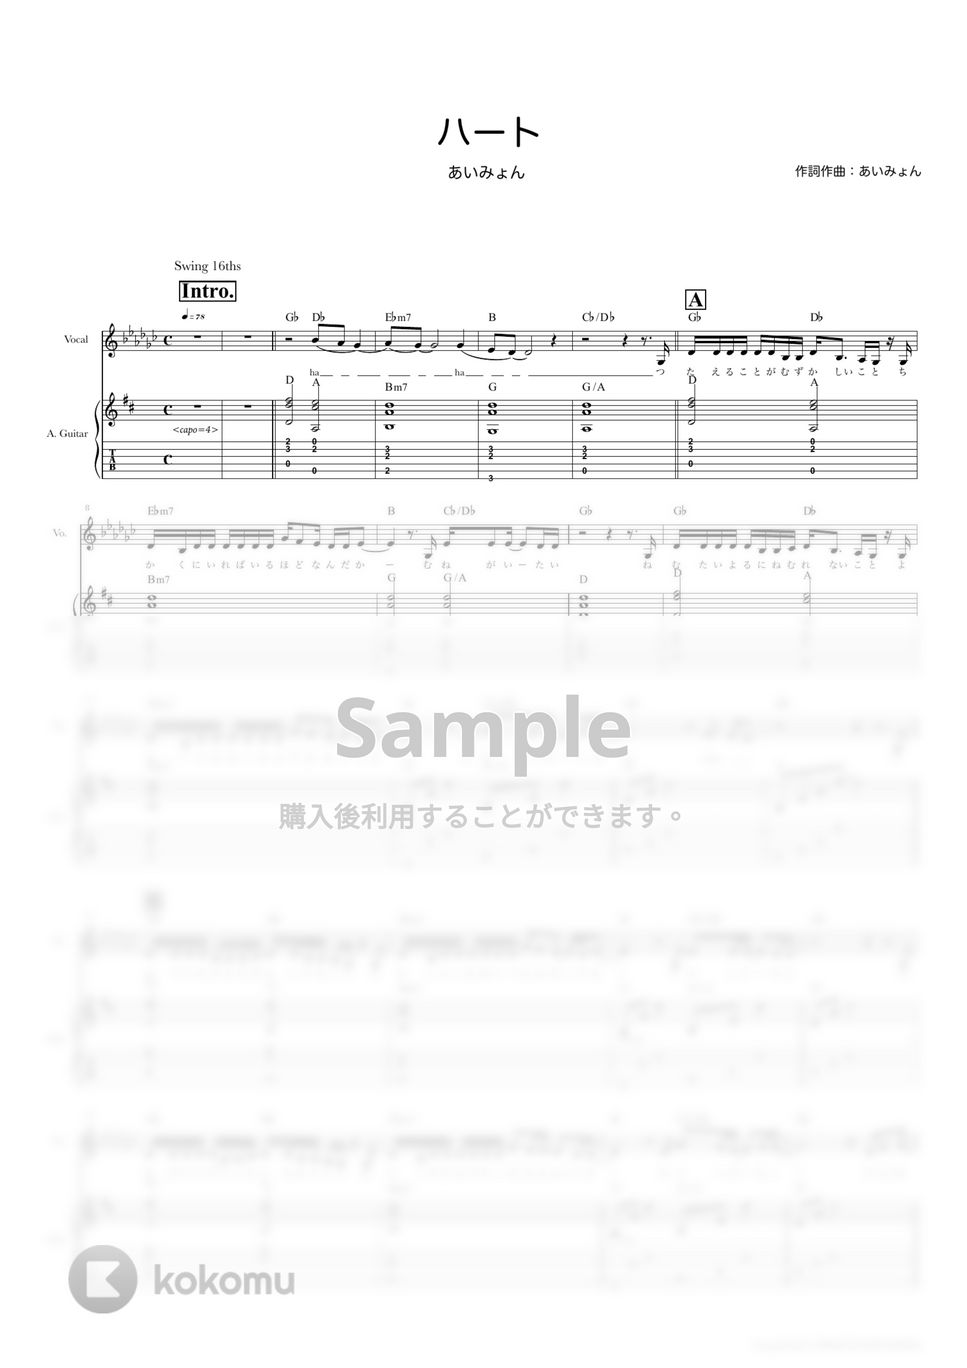 あいみょん - ハート (ギタースコア・歌詞・コード付き) by TRIAD GUITAR SCHOOL